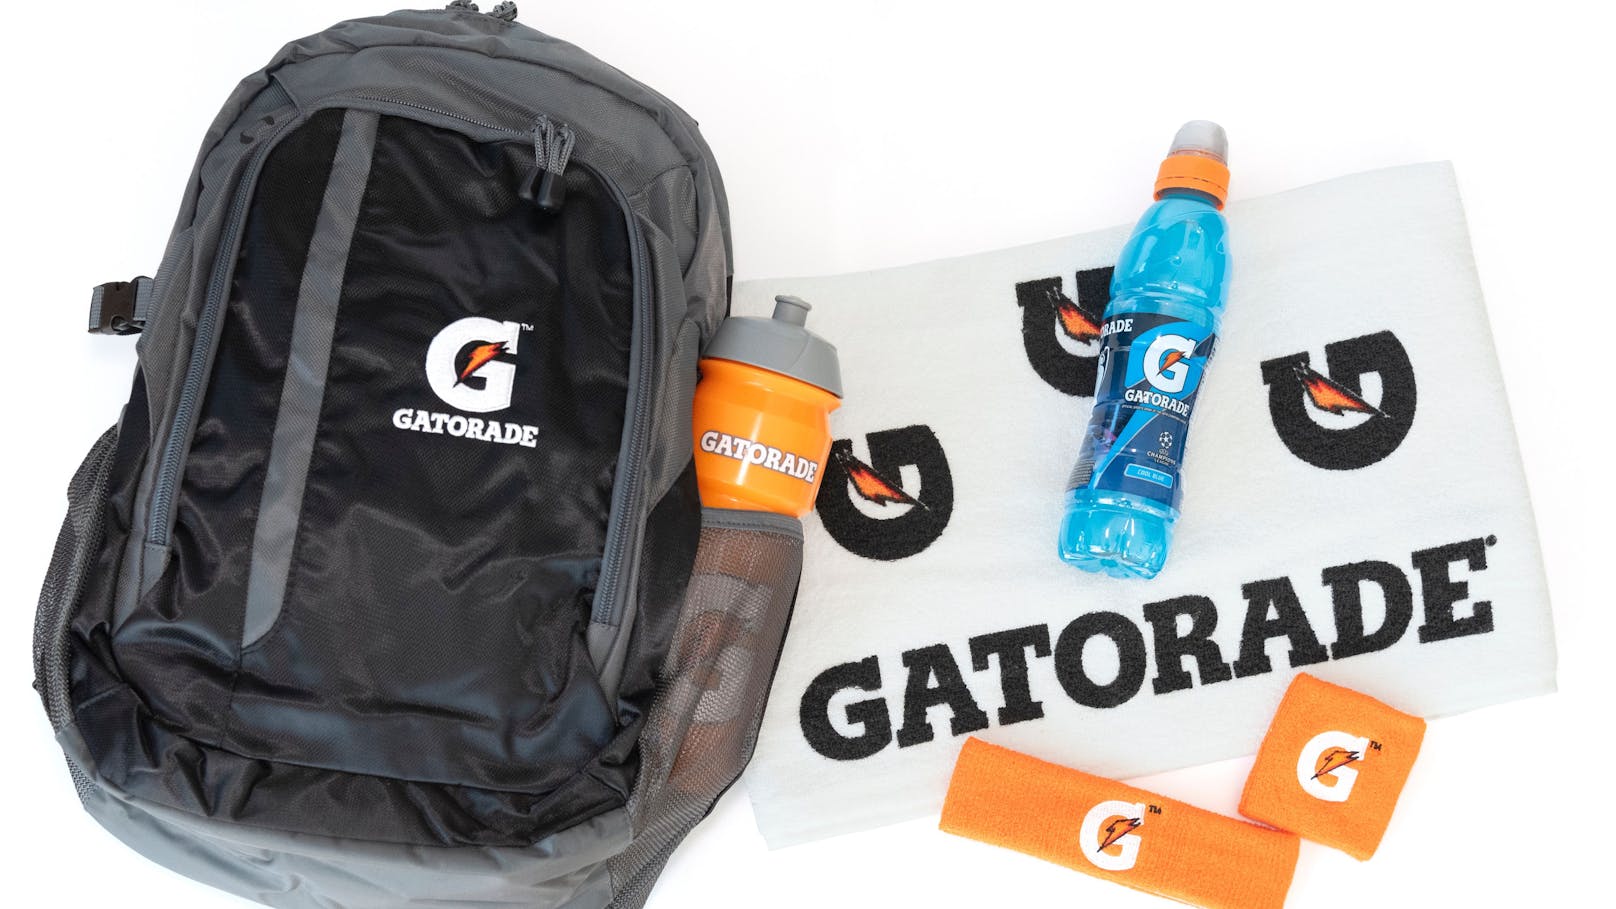 Sende dein coolstes Lauffoto ein und gewinne ein sportlich-kraftvolles Gatorade-Package!